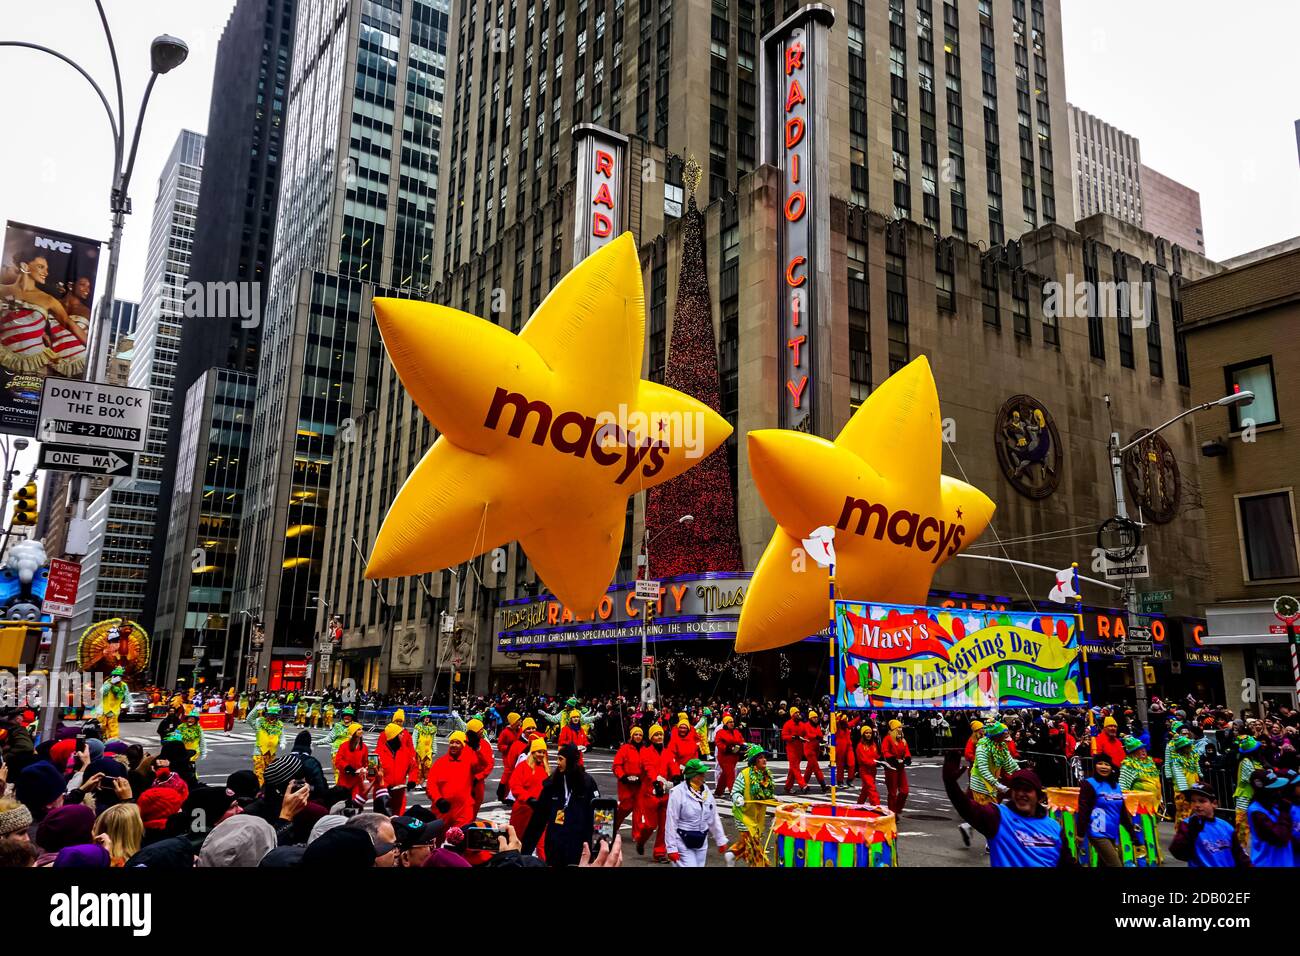 Le défilé annuel de Macy's Thanksgiving Day le long de l'avenue des Amériques avec des ballons flottant dans les airs. Banque D'Images